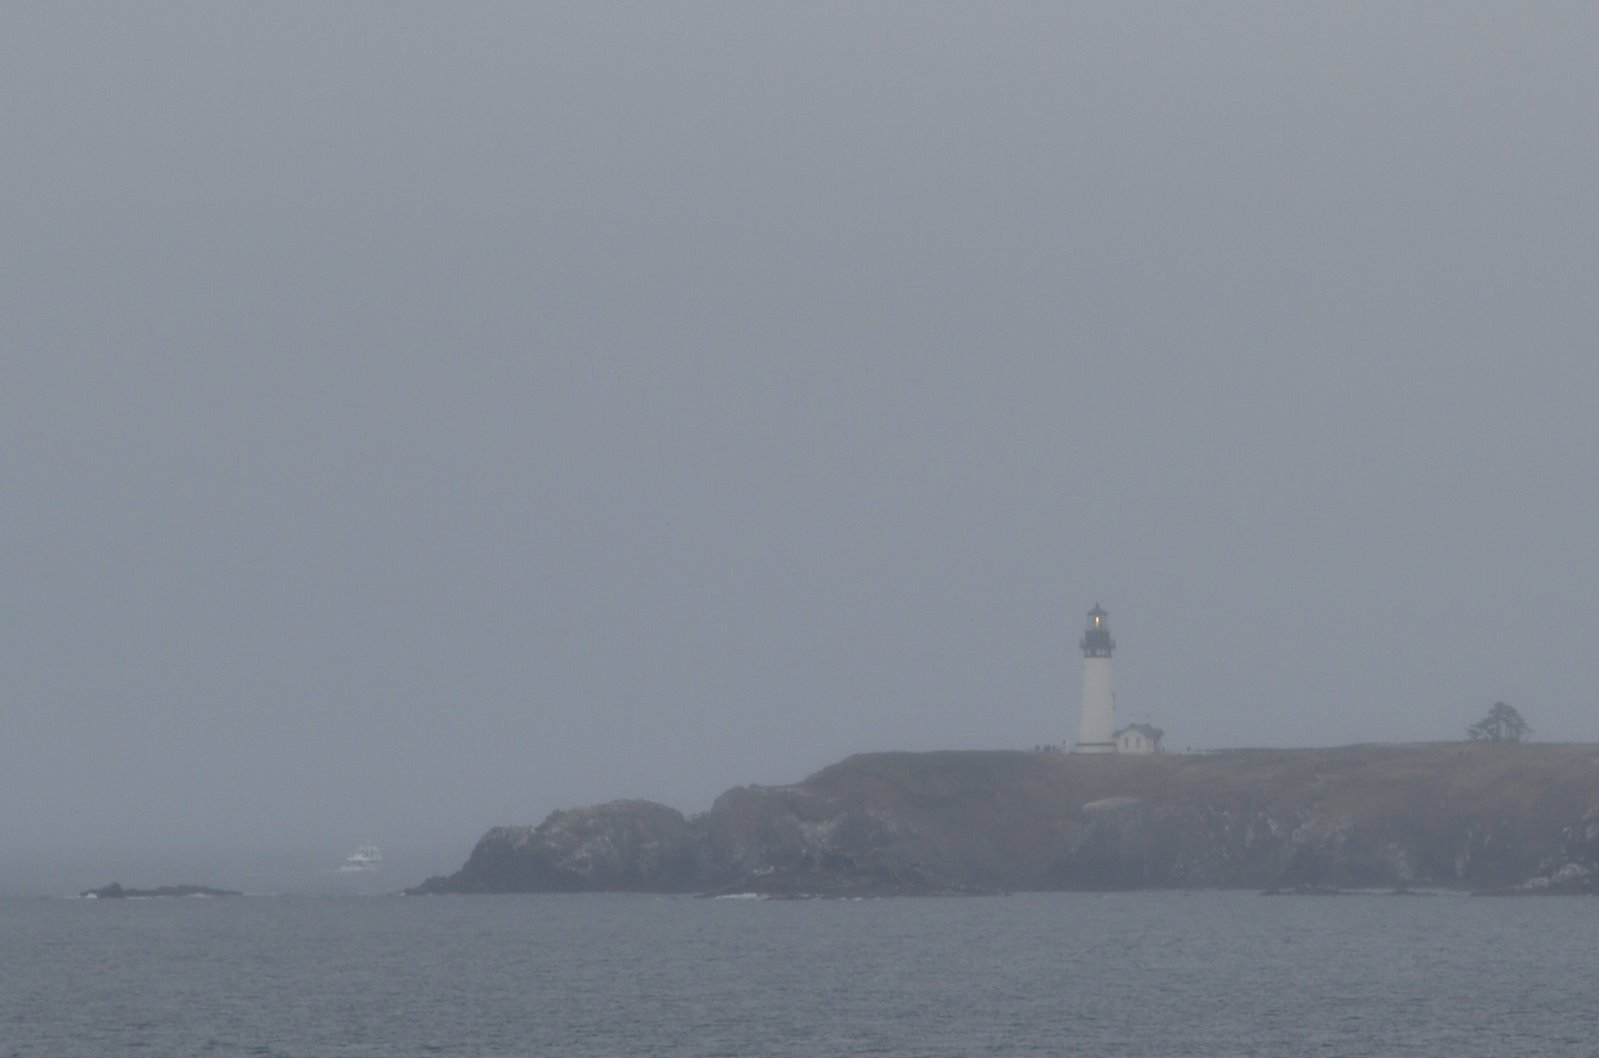 [Nye+Beach6+Foggy+Lighthouse.jpg]